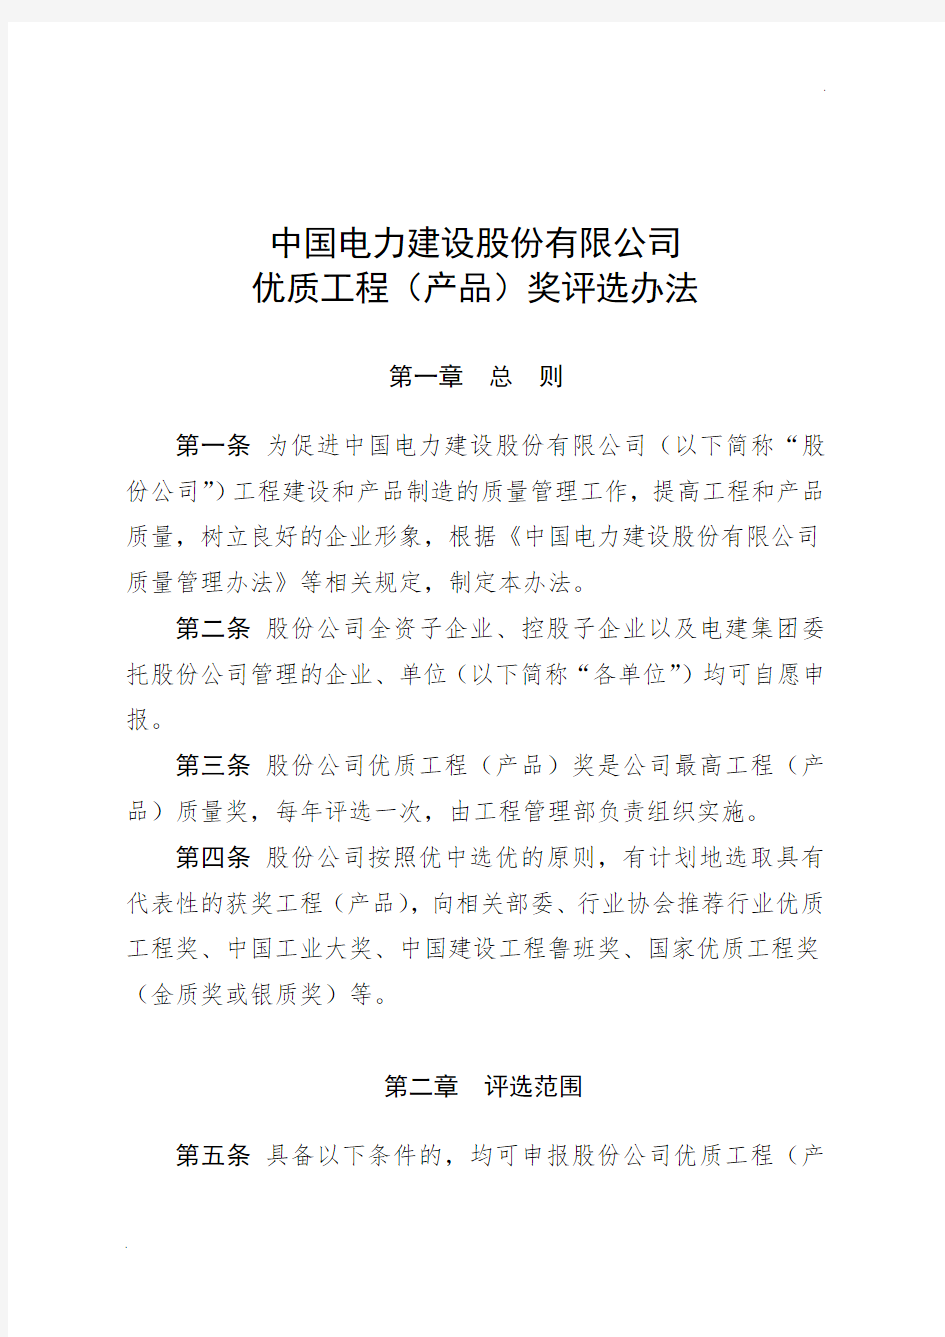 中国电力建设股份有限公司优质工程(产品)奖评选办法(中电建股〔2014〕158号)